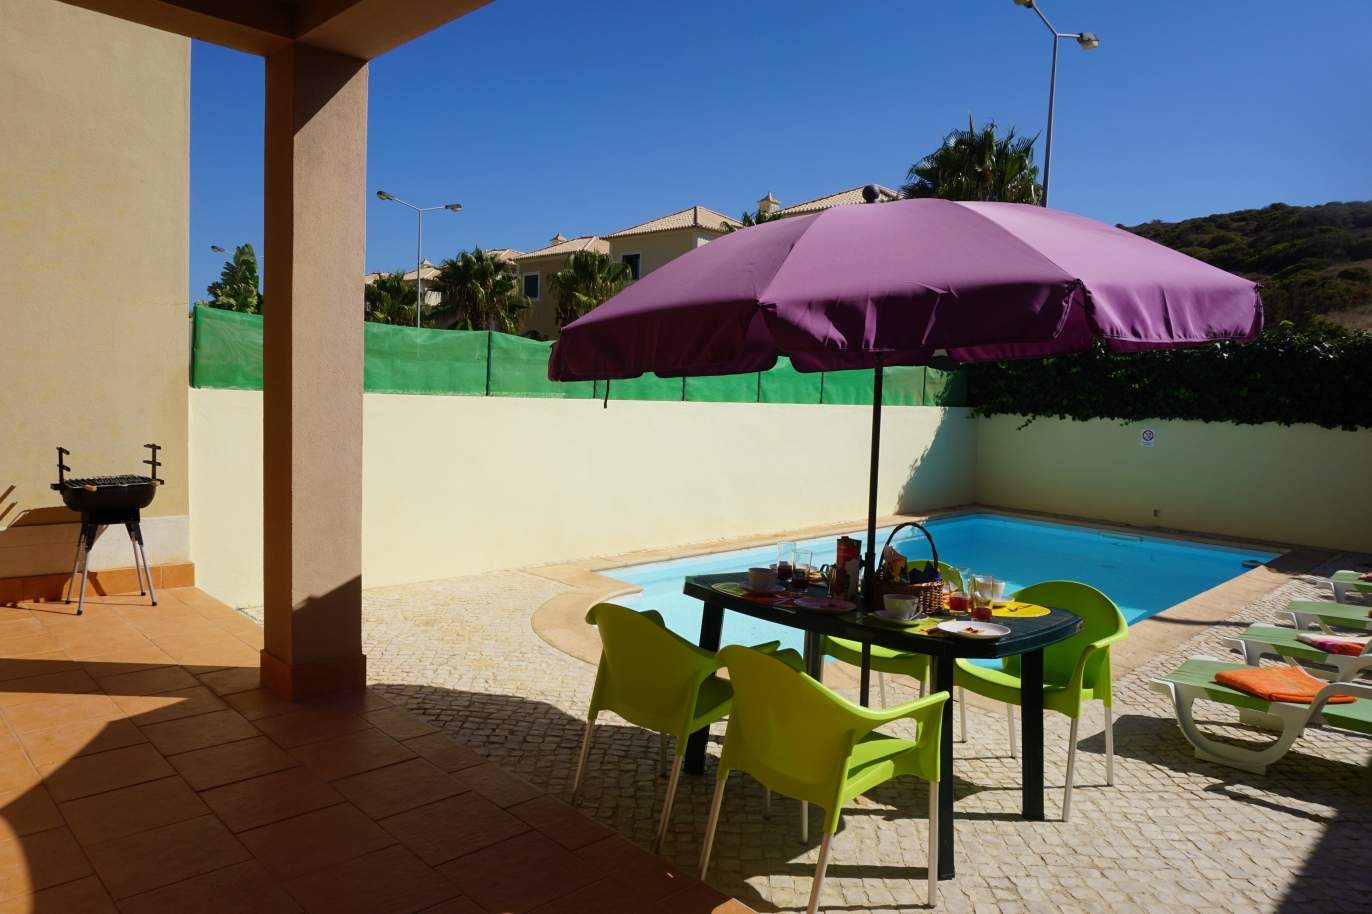 Venda de moradia com piscina, Budens,Vila do Bispo, Algarve, Portugal_118781